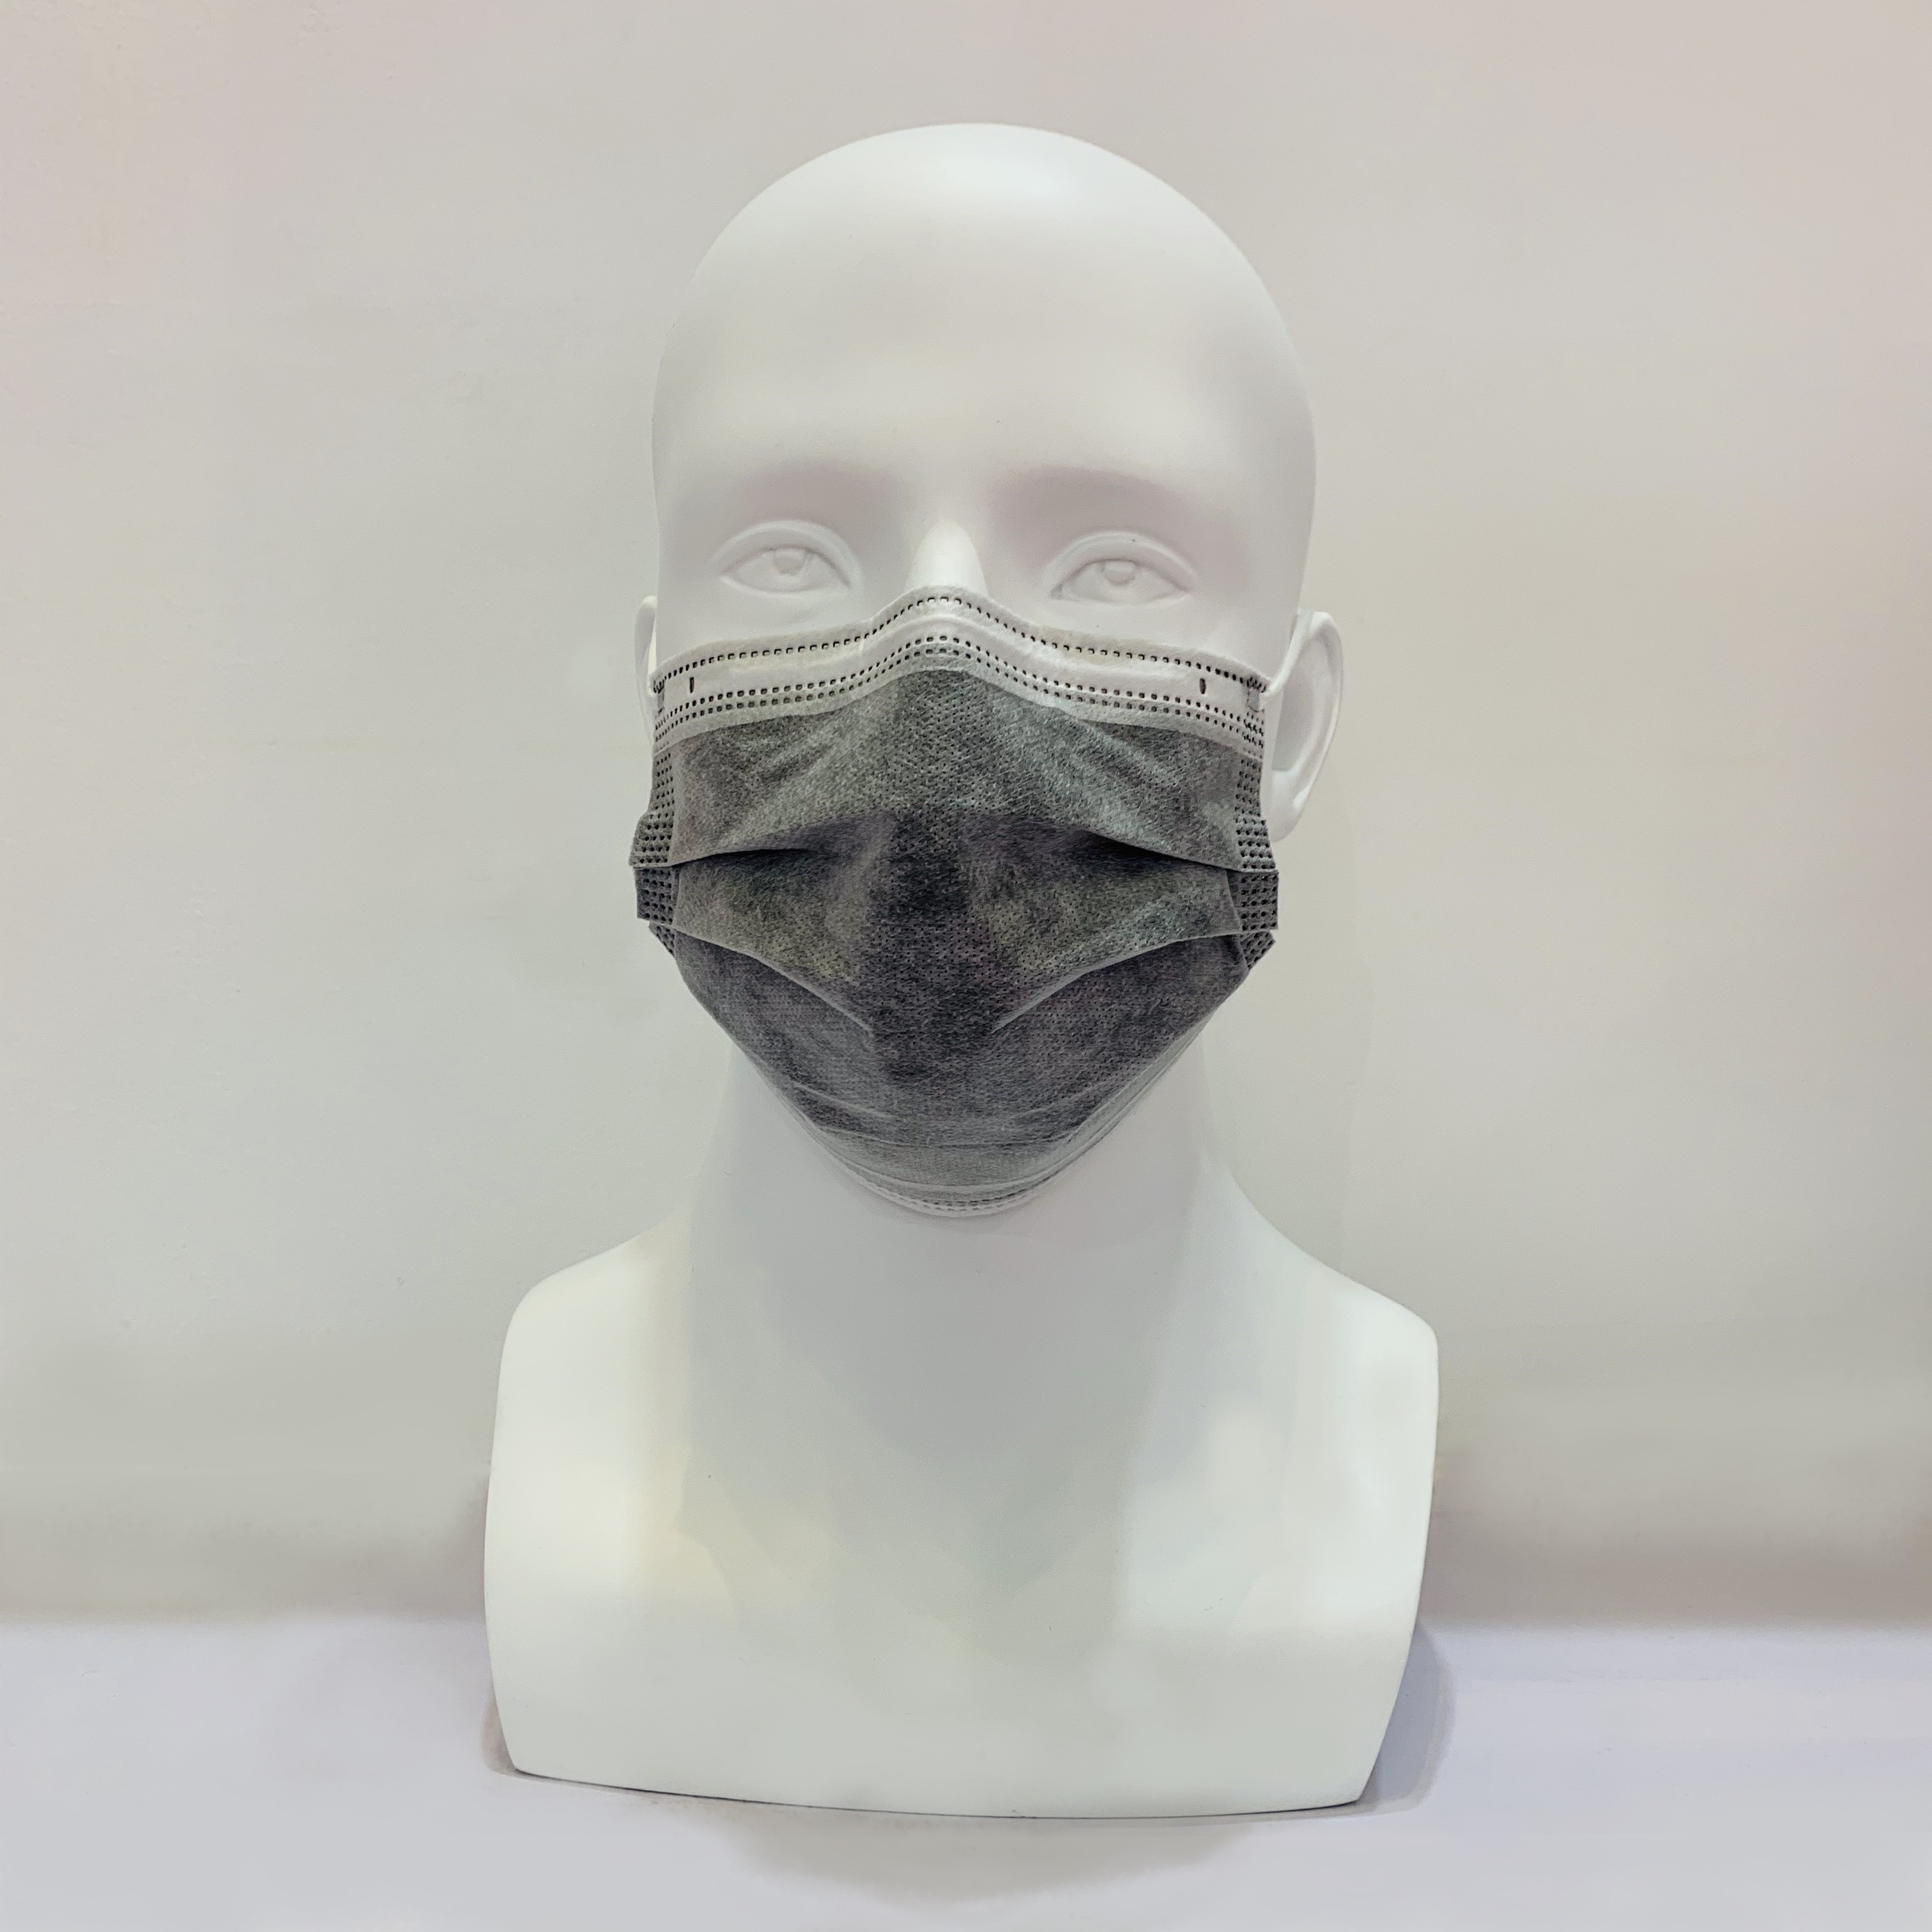 Masque facial de filtre à charbon activé anti-poussière jetable PM 2,5 de couleur grise
